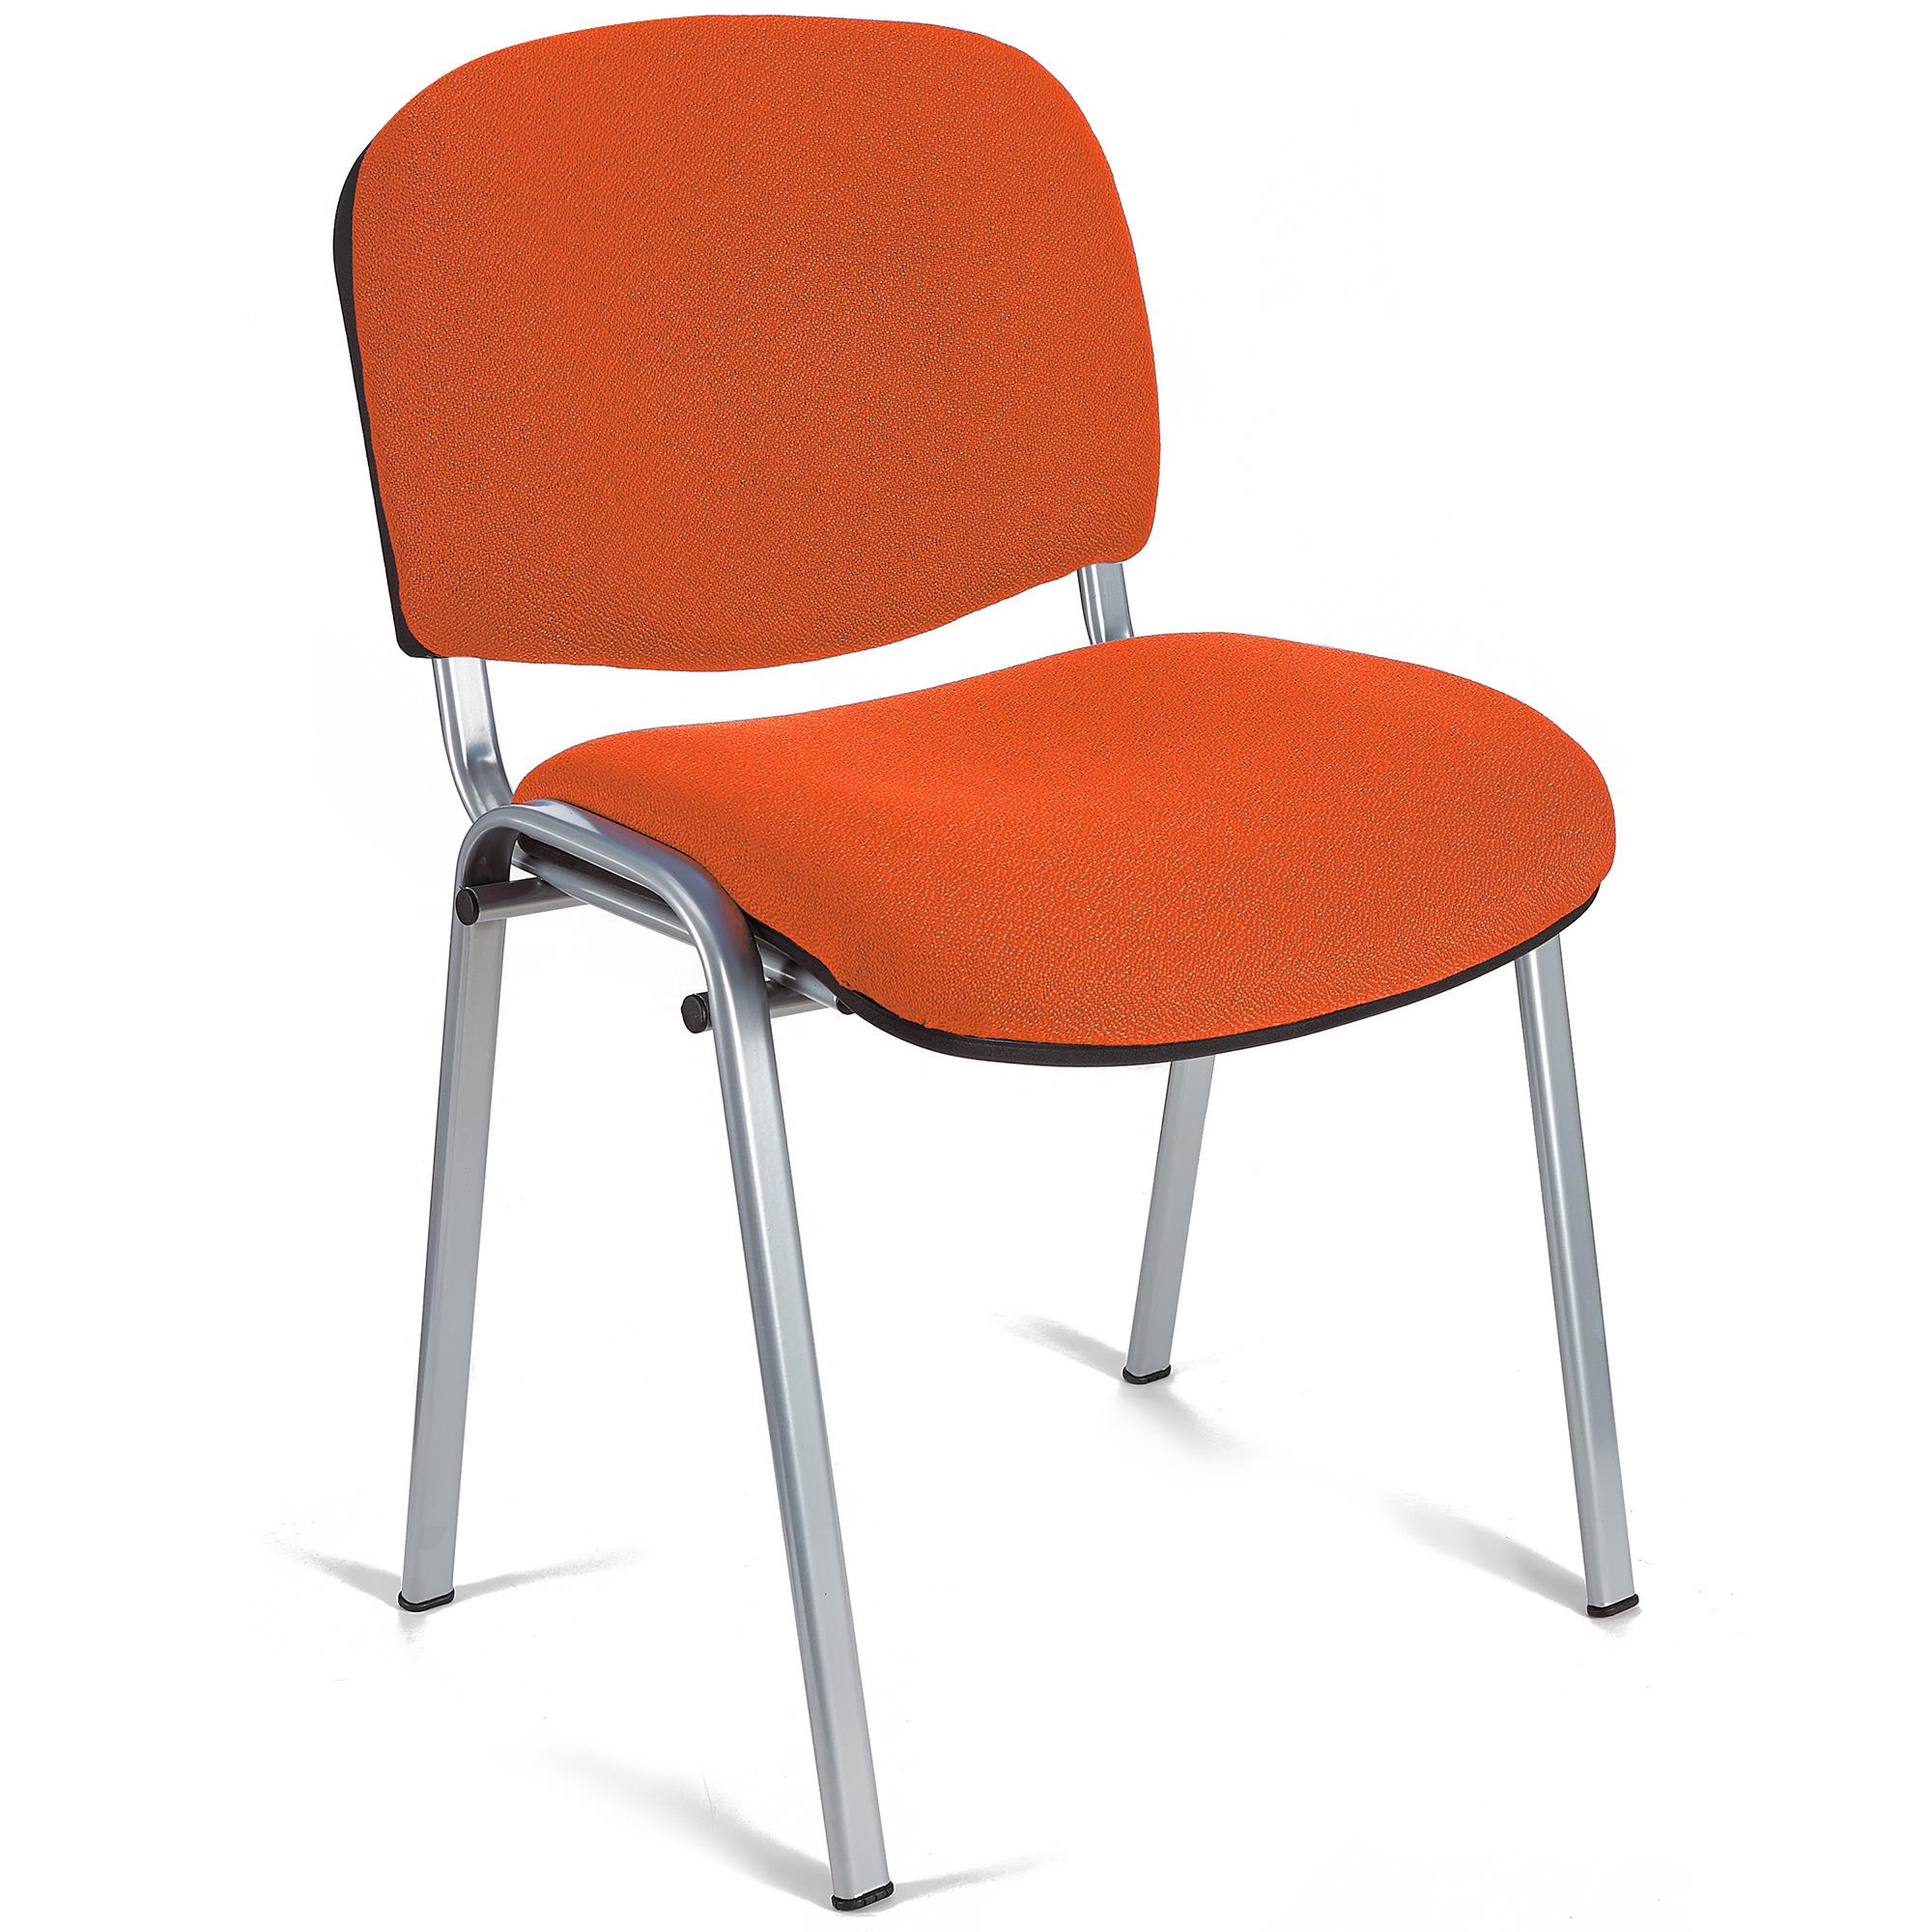 Konferenzstuhl MOBY BASE mit grauen Stuhlbeinen, bequem und praktisch, stapelbar, Farbe Orange